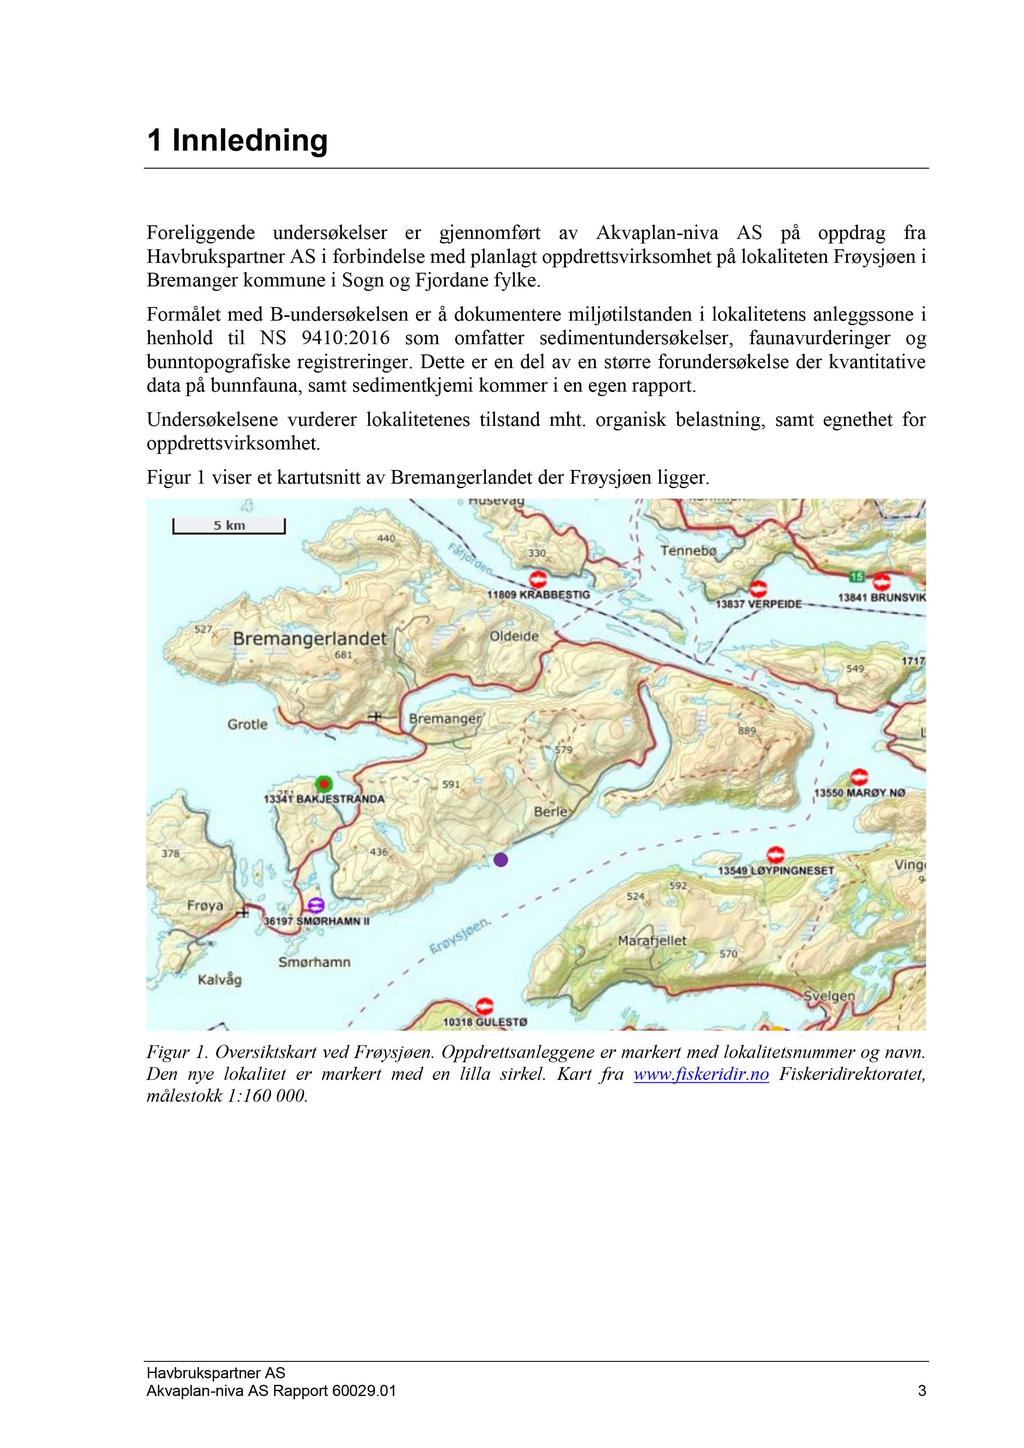 1 Innledning Foreliggende undersøkelser er gjennomført av Akvaplan - niva AS på oppdrag fra i forbindelse med planlagt oppdrettsvirksomhet på lokaliteten Frøysjøen i Bremanger kommune i Sogn og